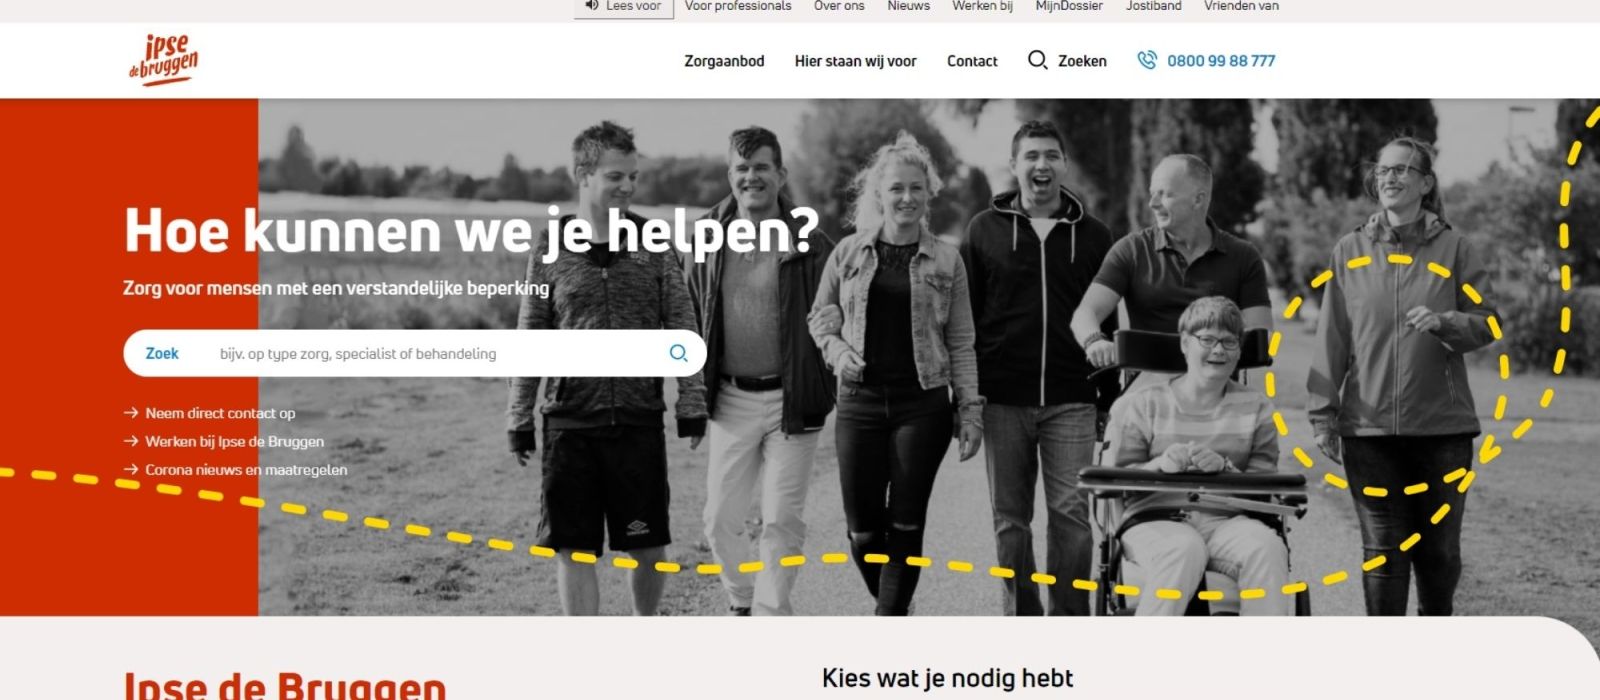 Impressie van de nieuwe website van Ipse de Bruggen